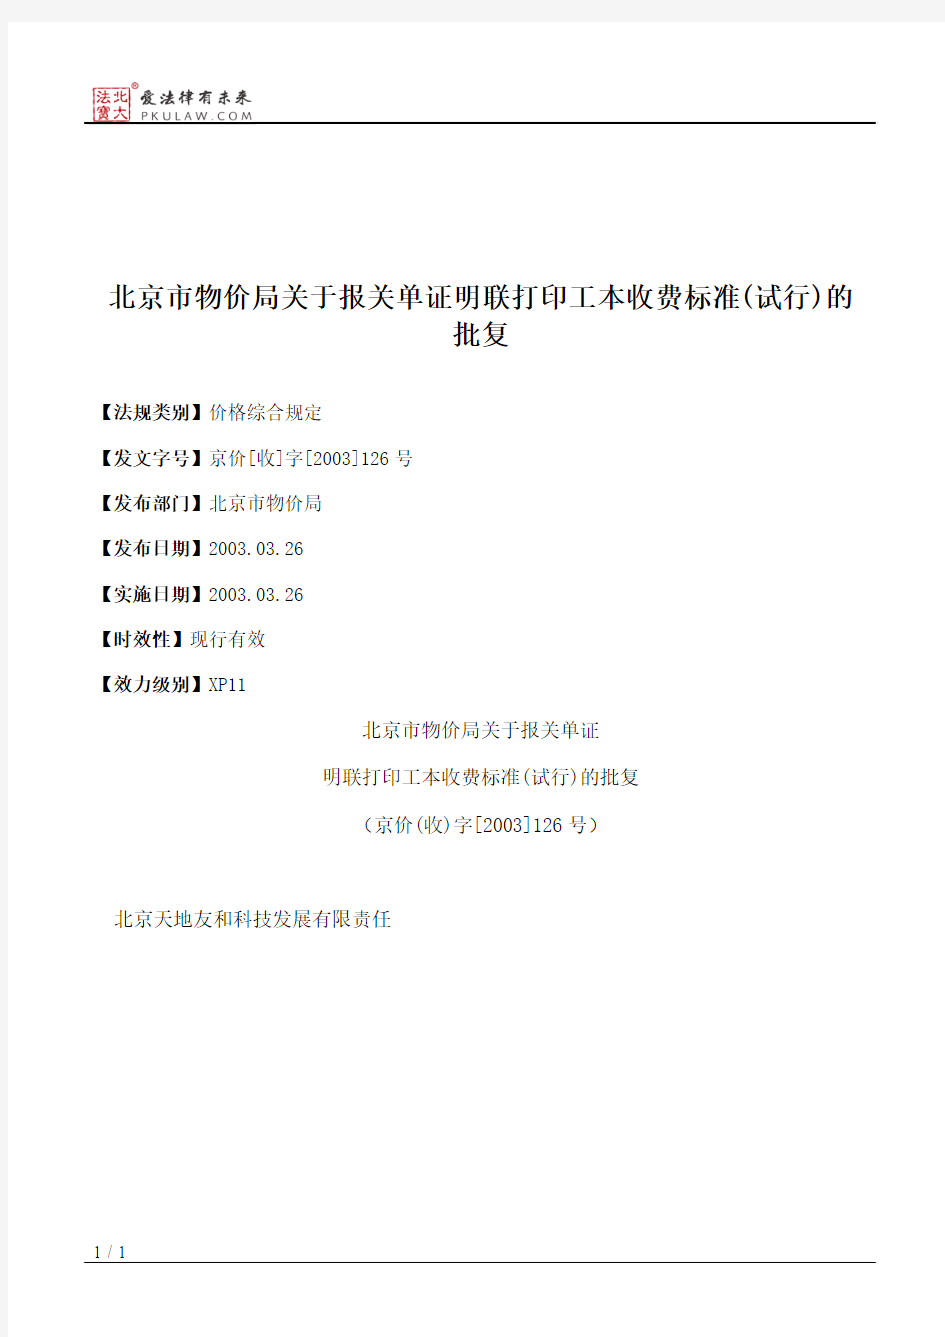 北京市物价局关于报关单证明联打印工本收费标准(试行)的批复